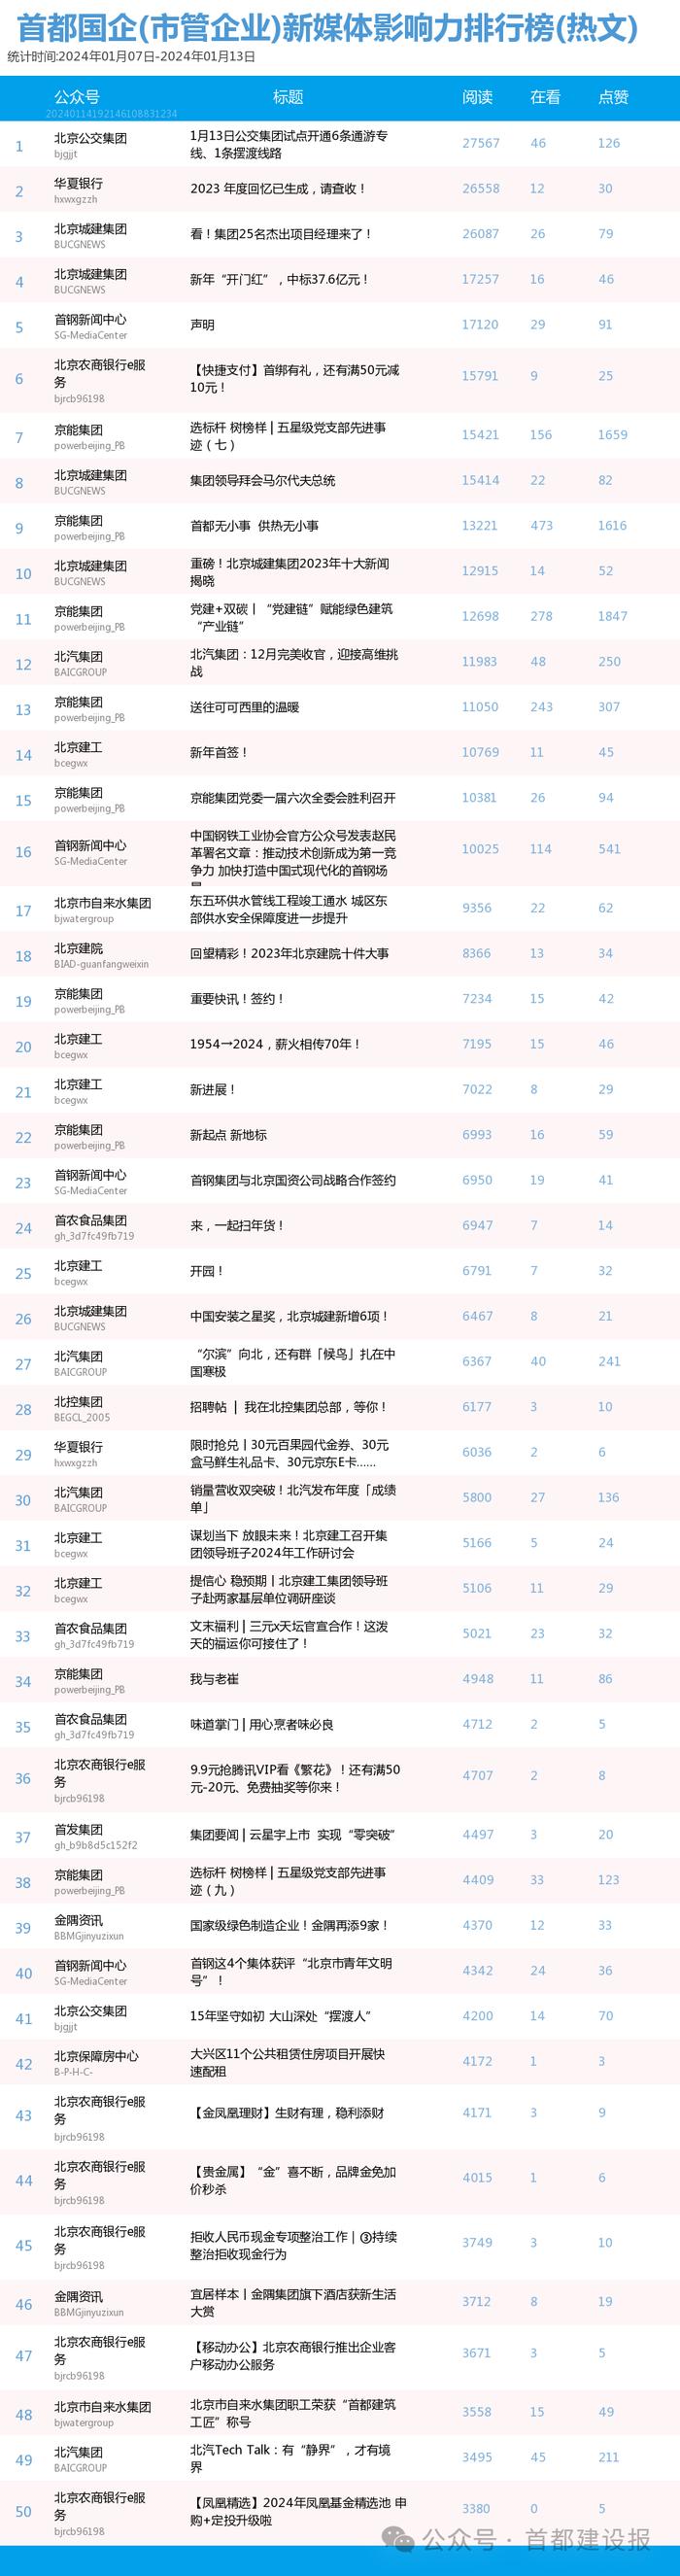 【北京国企新媒体影响力排行榜】1月周榜(1.7-1.13)第390期